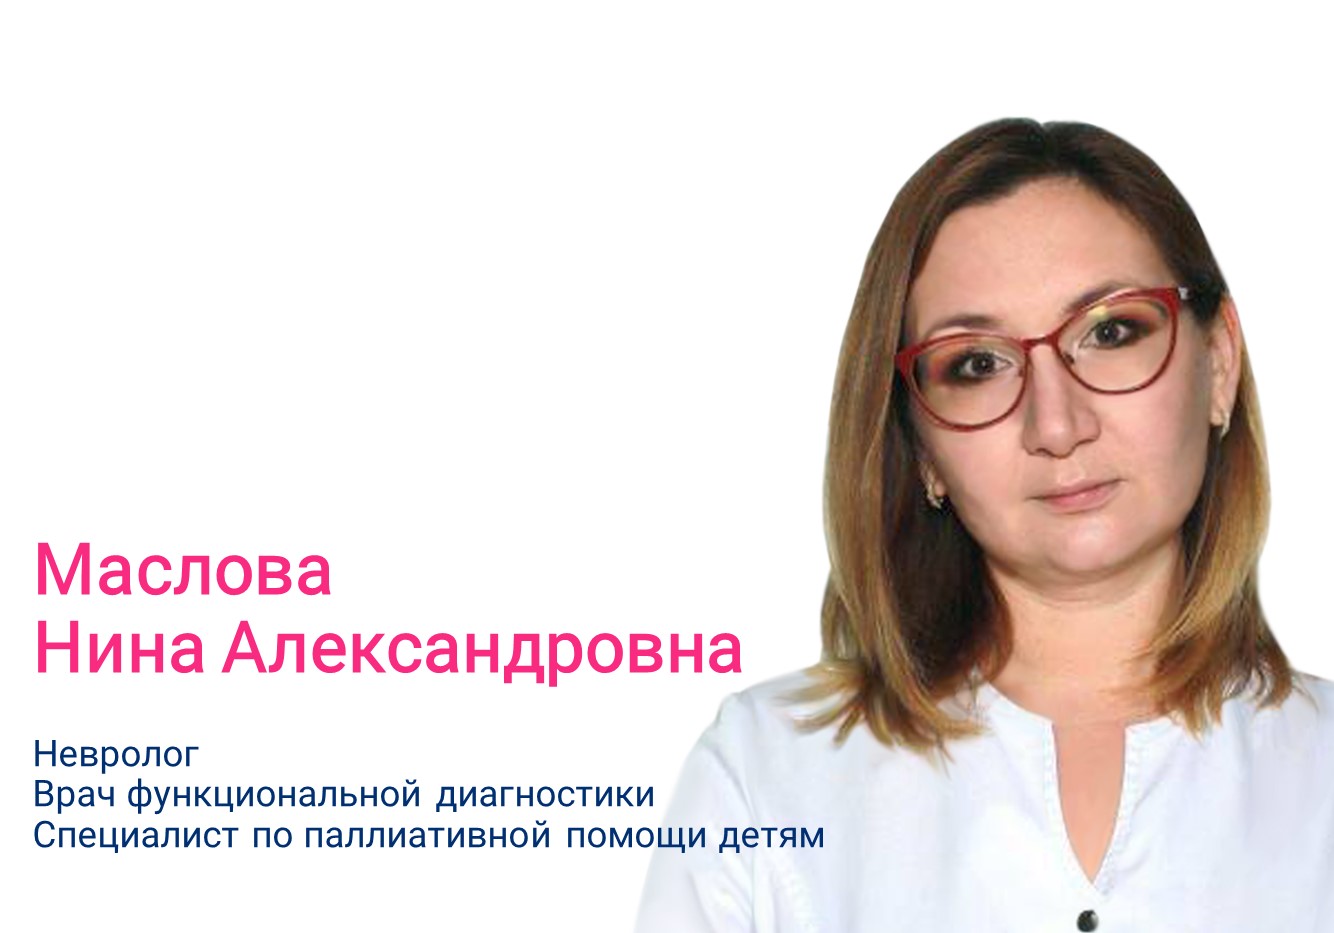 Нина Александровна Маслова о ботулинотерапии при диагностированном ДЦП и сиалорее